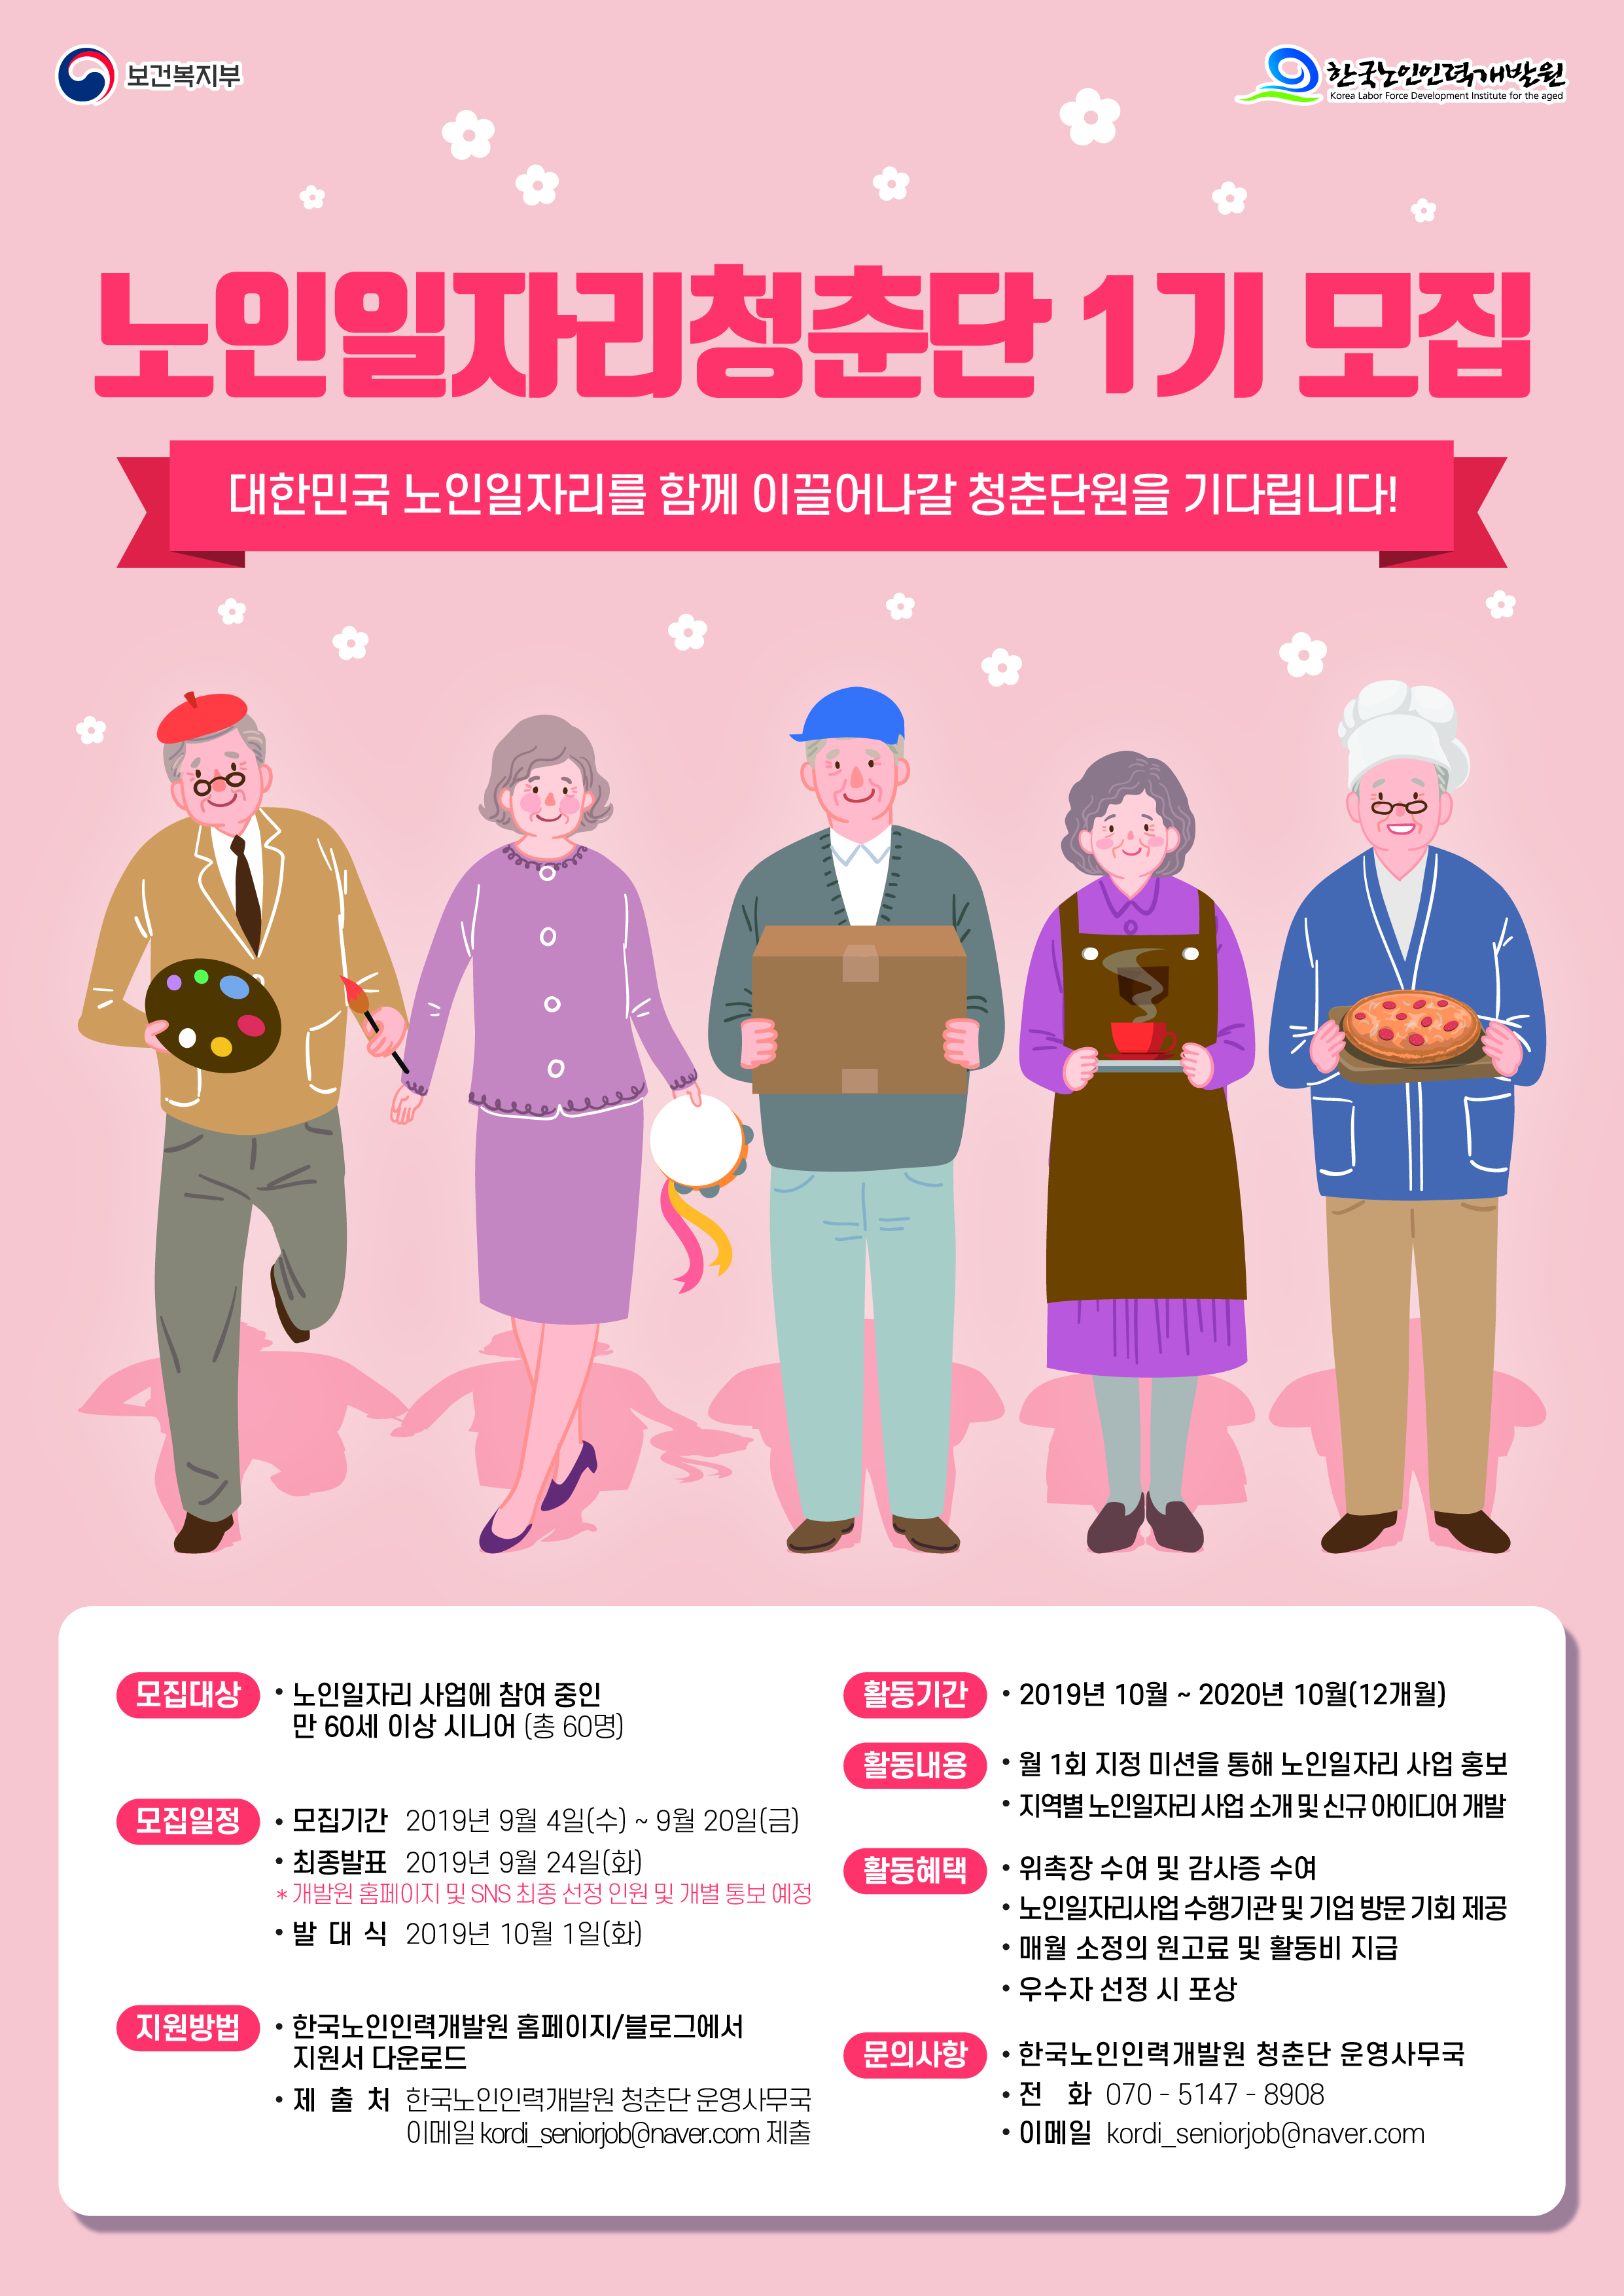 2019년 노인일자리청춘단 1기 모집 홍보 1